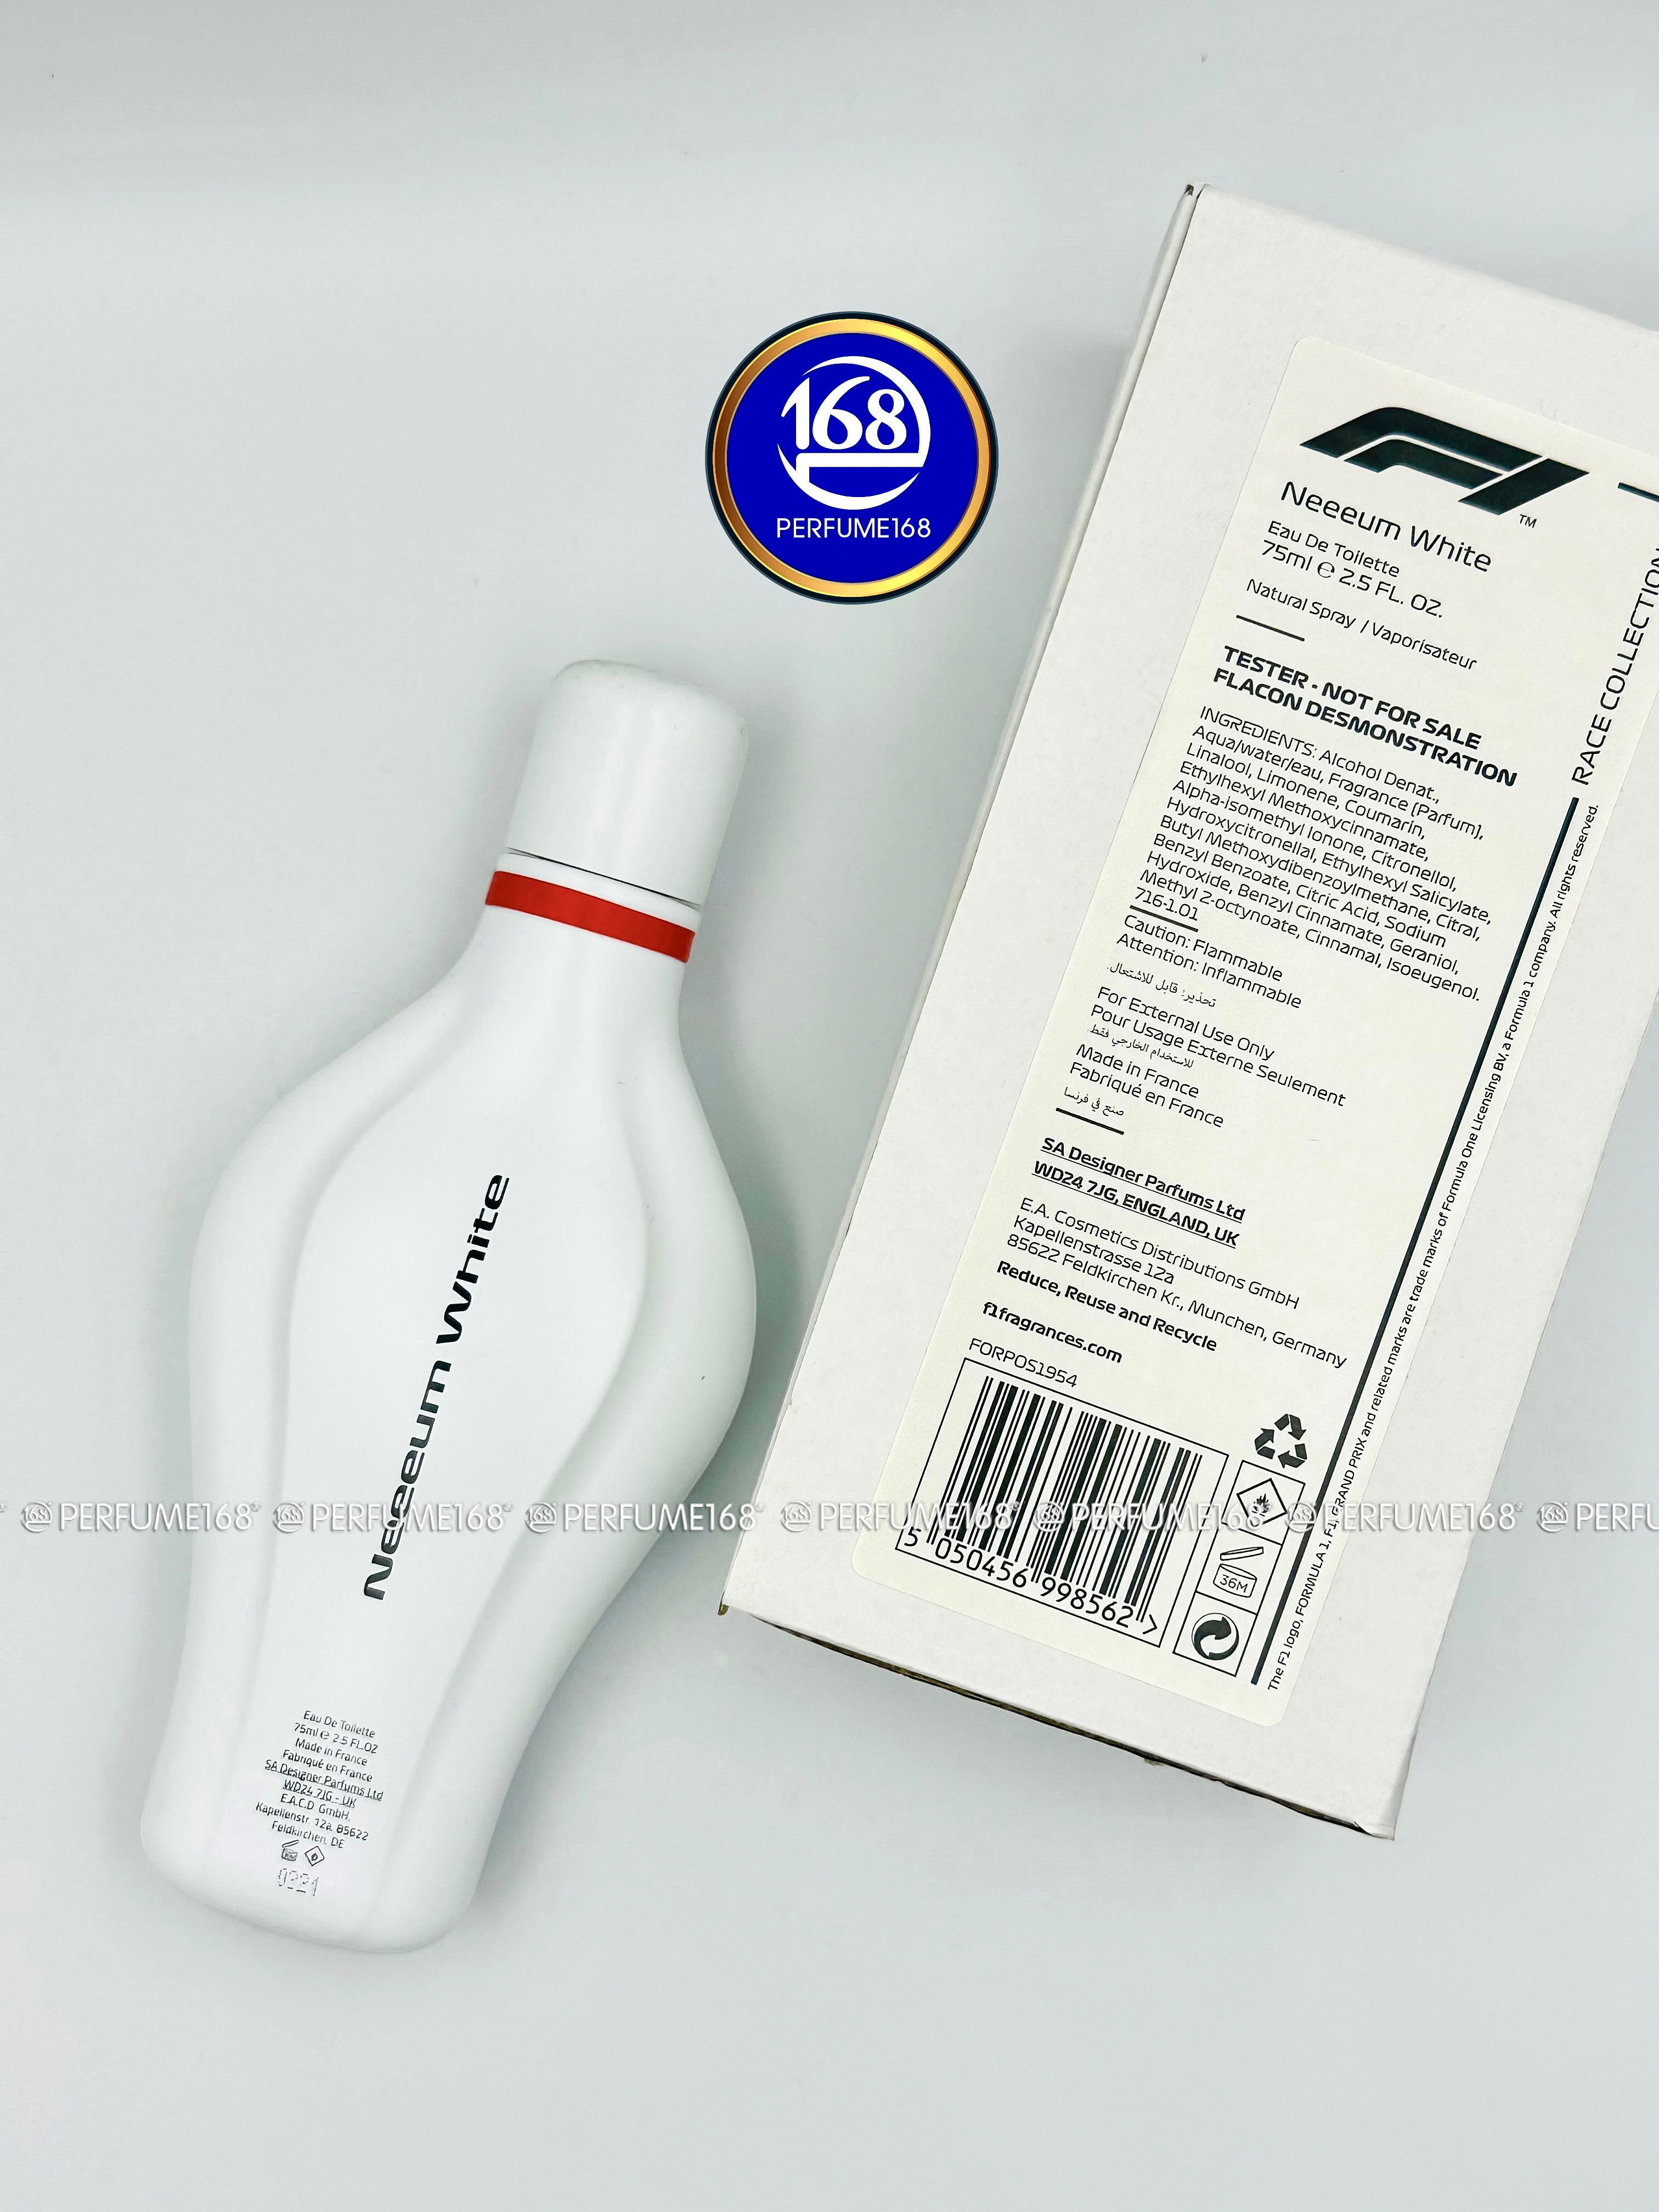 Formula 1 F1 Neeeum White - Nước hoa chính hãng 100% nhập khẩu Pháp, Mỹ…Giá  tốt tại Perfume168